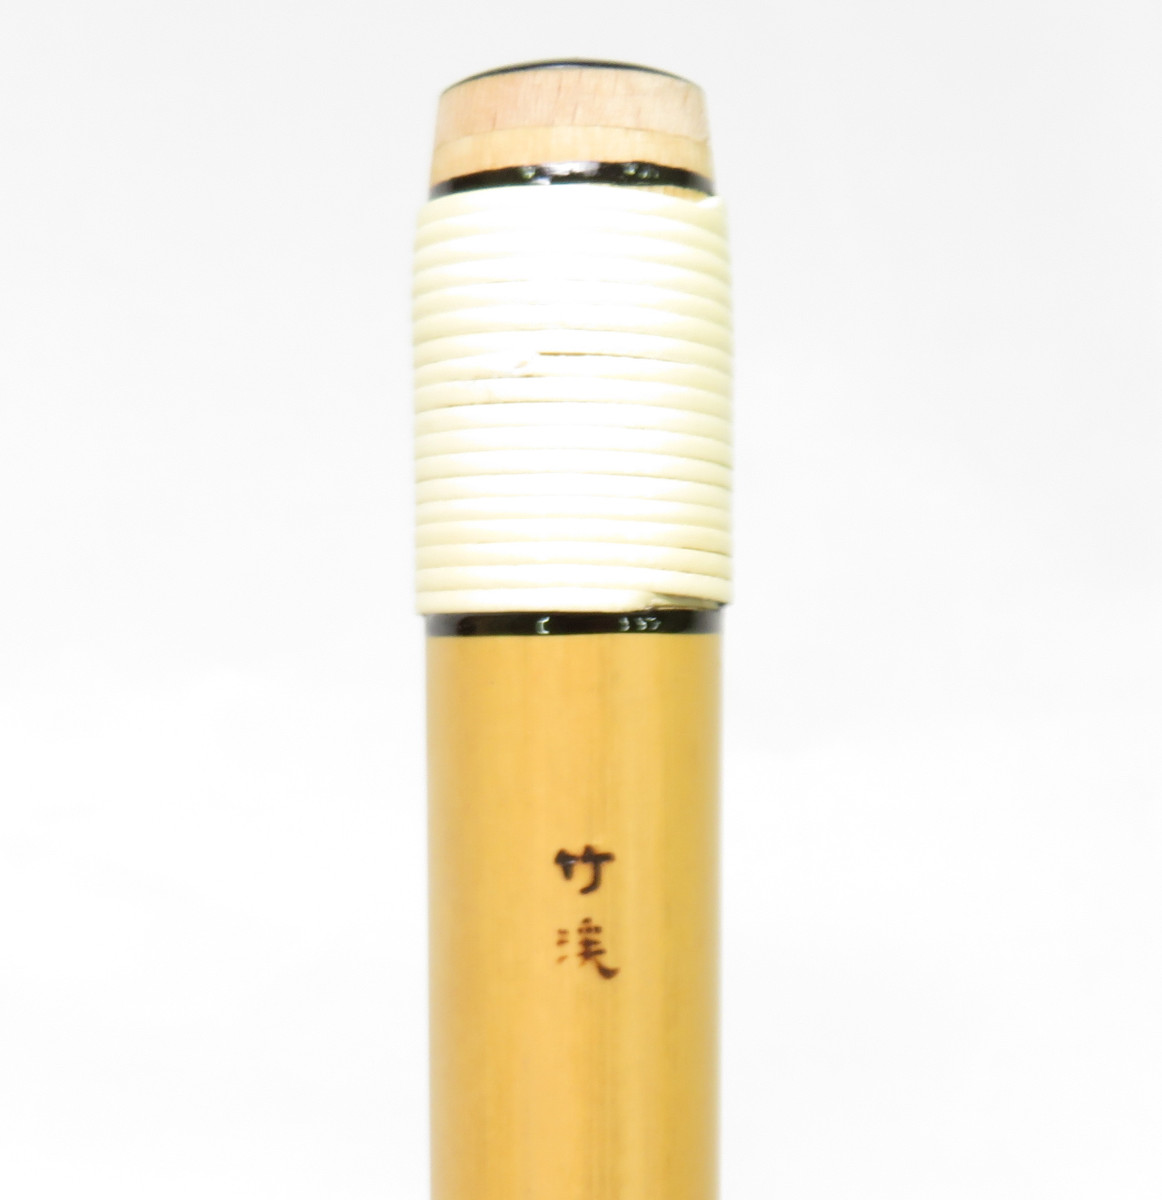  лев рисовое поле бамбук . шт глициния обе шт шесть книга@ состояние (6шт.@) классика style shinobue (...* праздник для ) поперечная флейта 